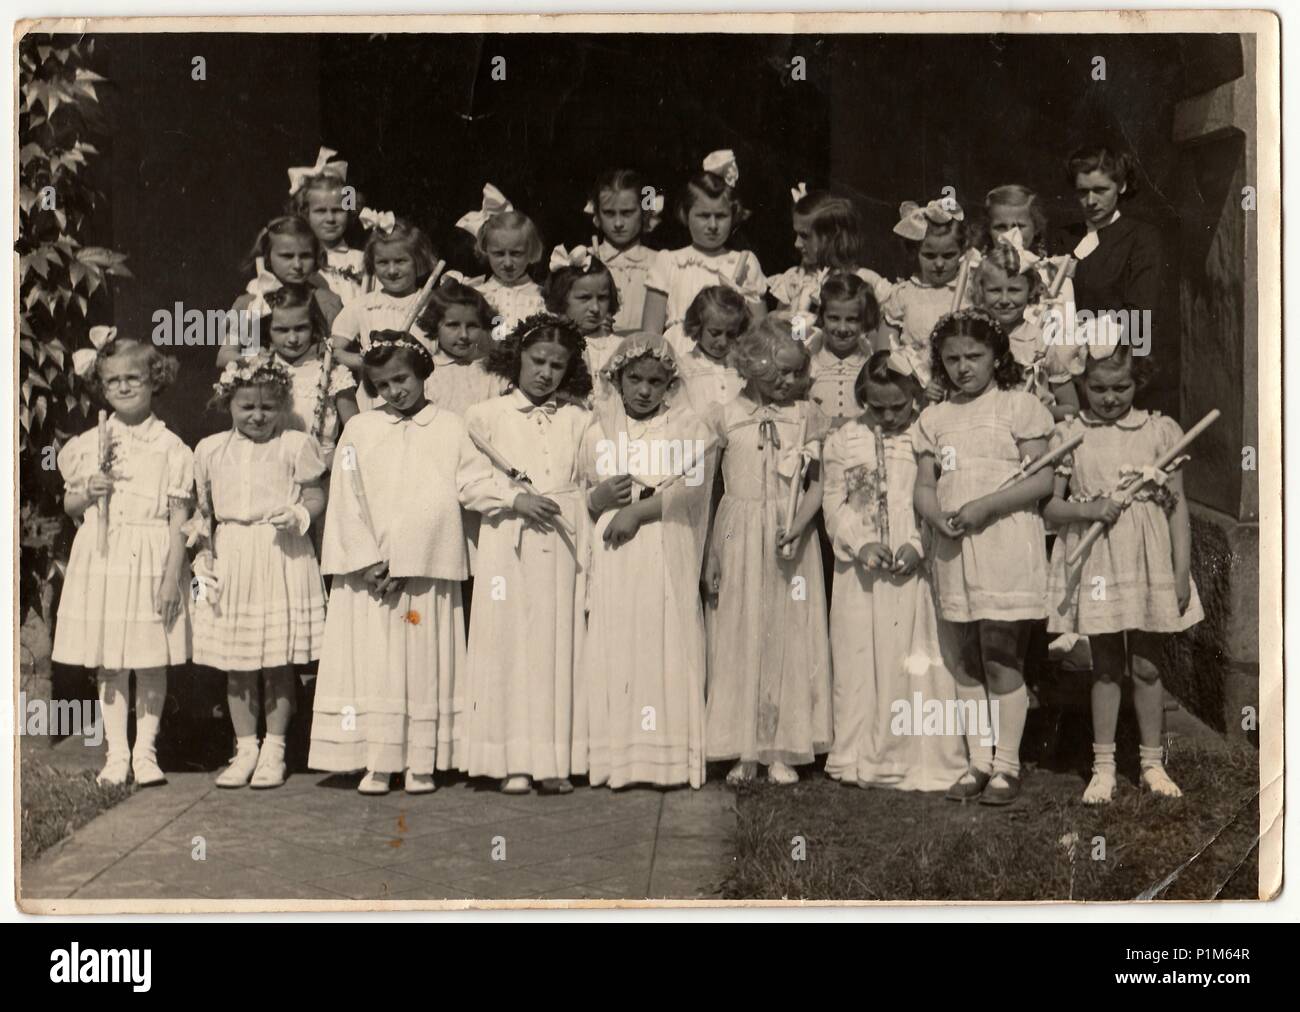 La République socialiste tchécoslovaque - circa 1950 : Retro photo montre les filles et leur première communion. Photographie noir et blanc vintage. Banque D'Images